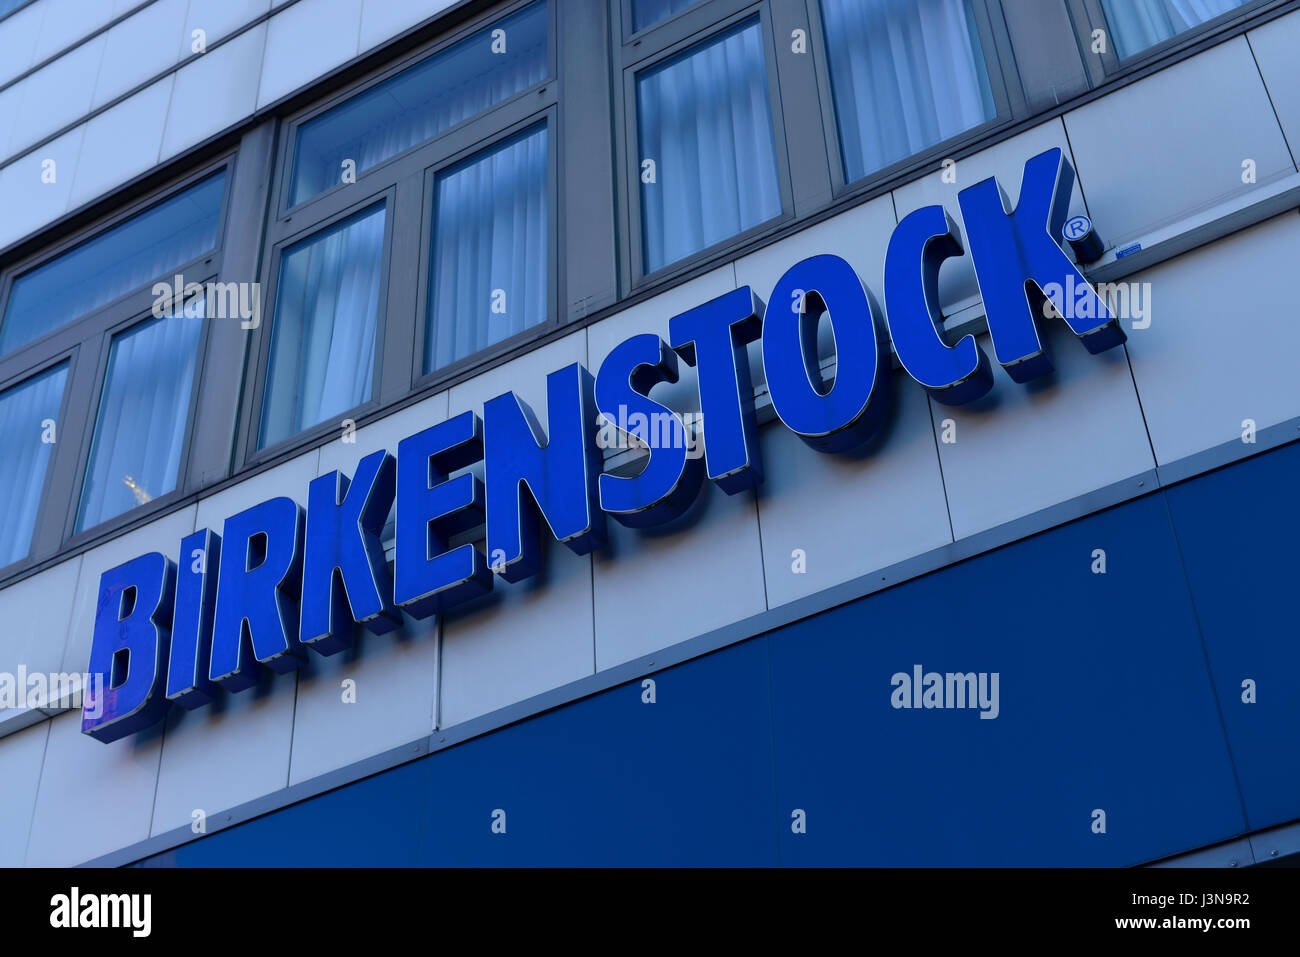 Tienda de birkenstock alemania fotografías e imágenes de alta resolución -  Alamy